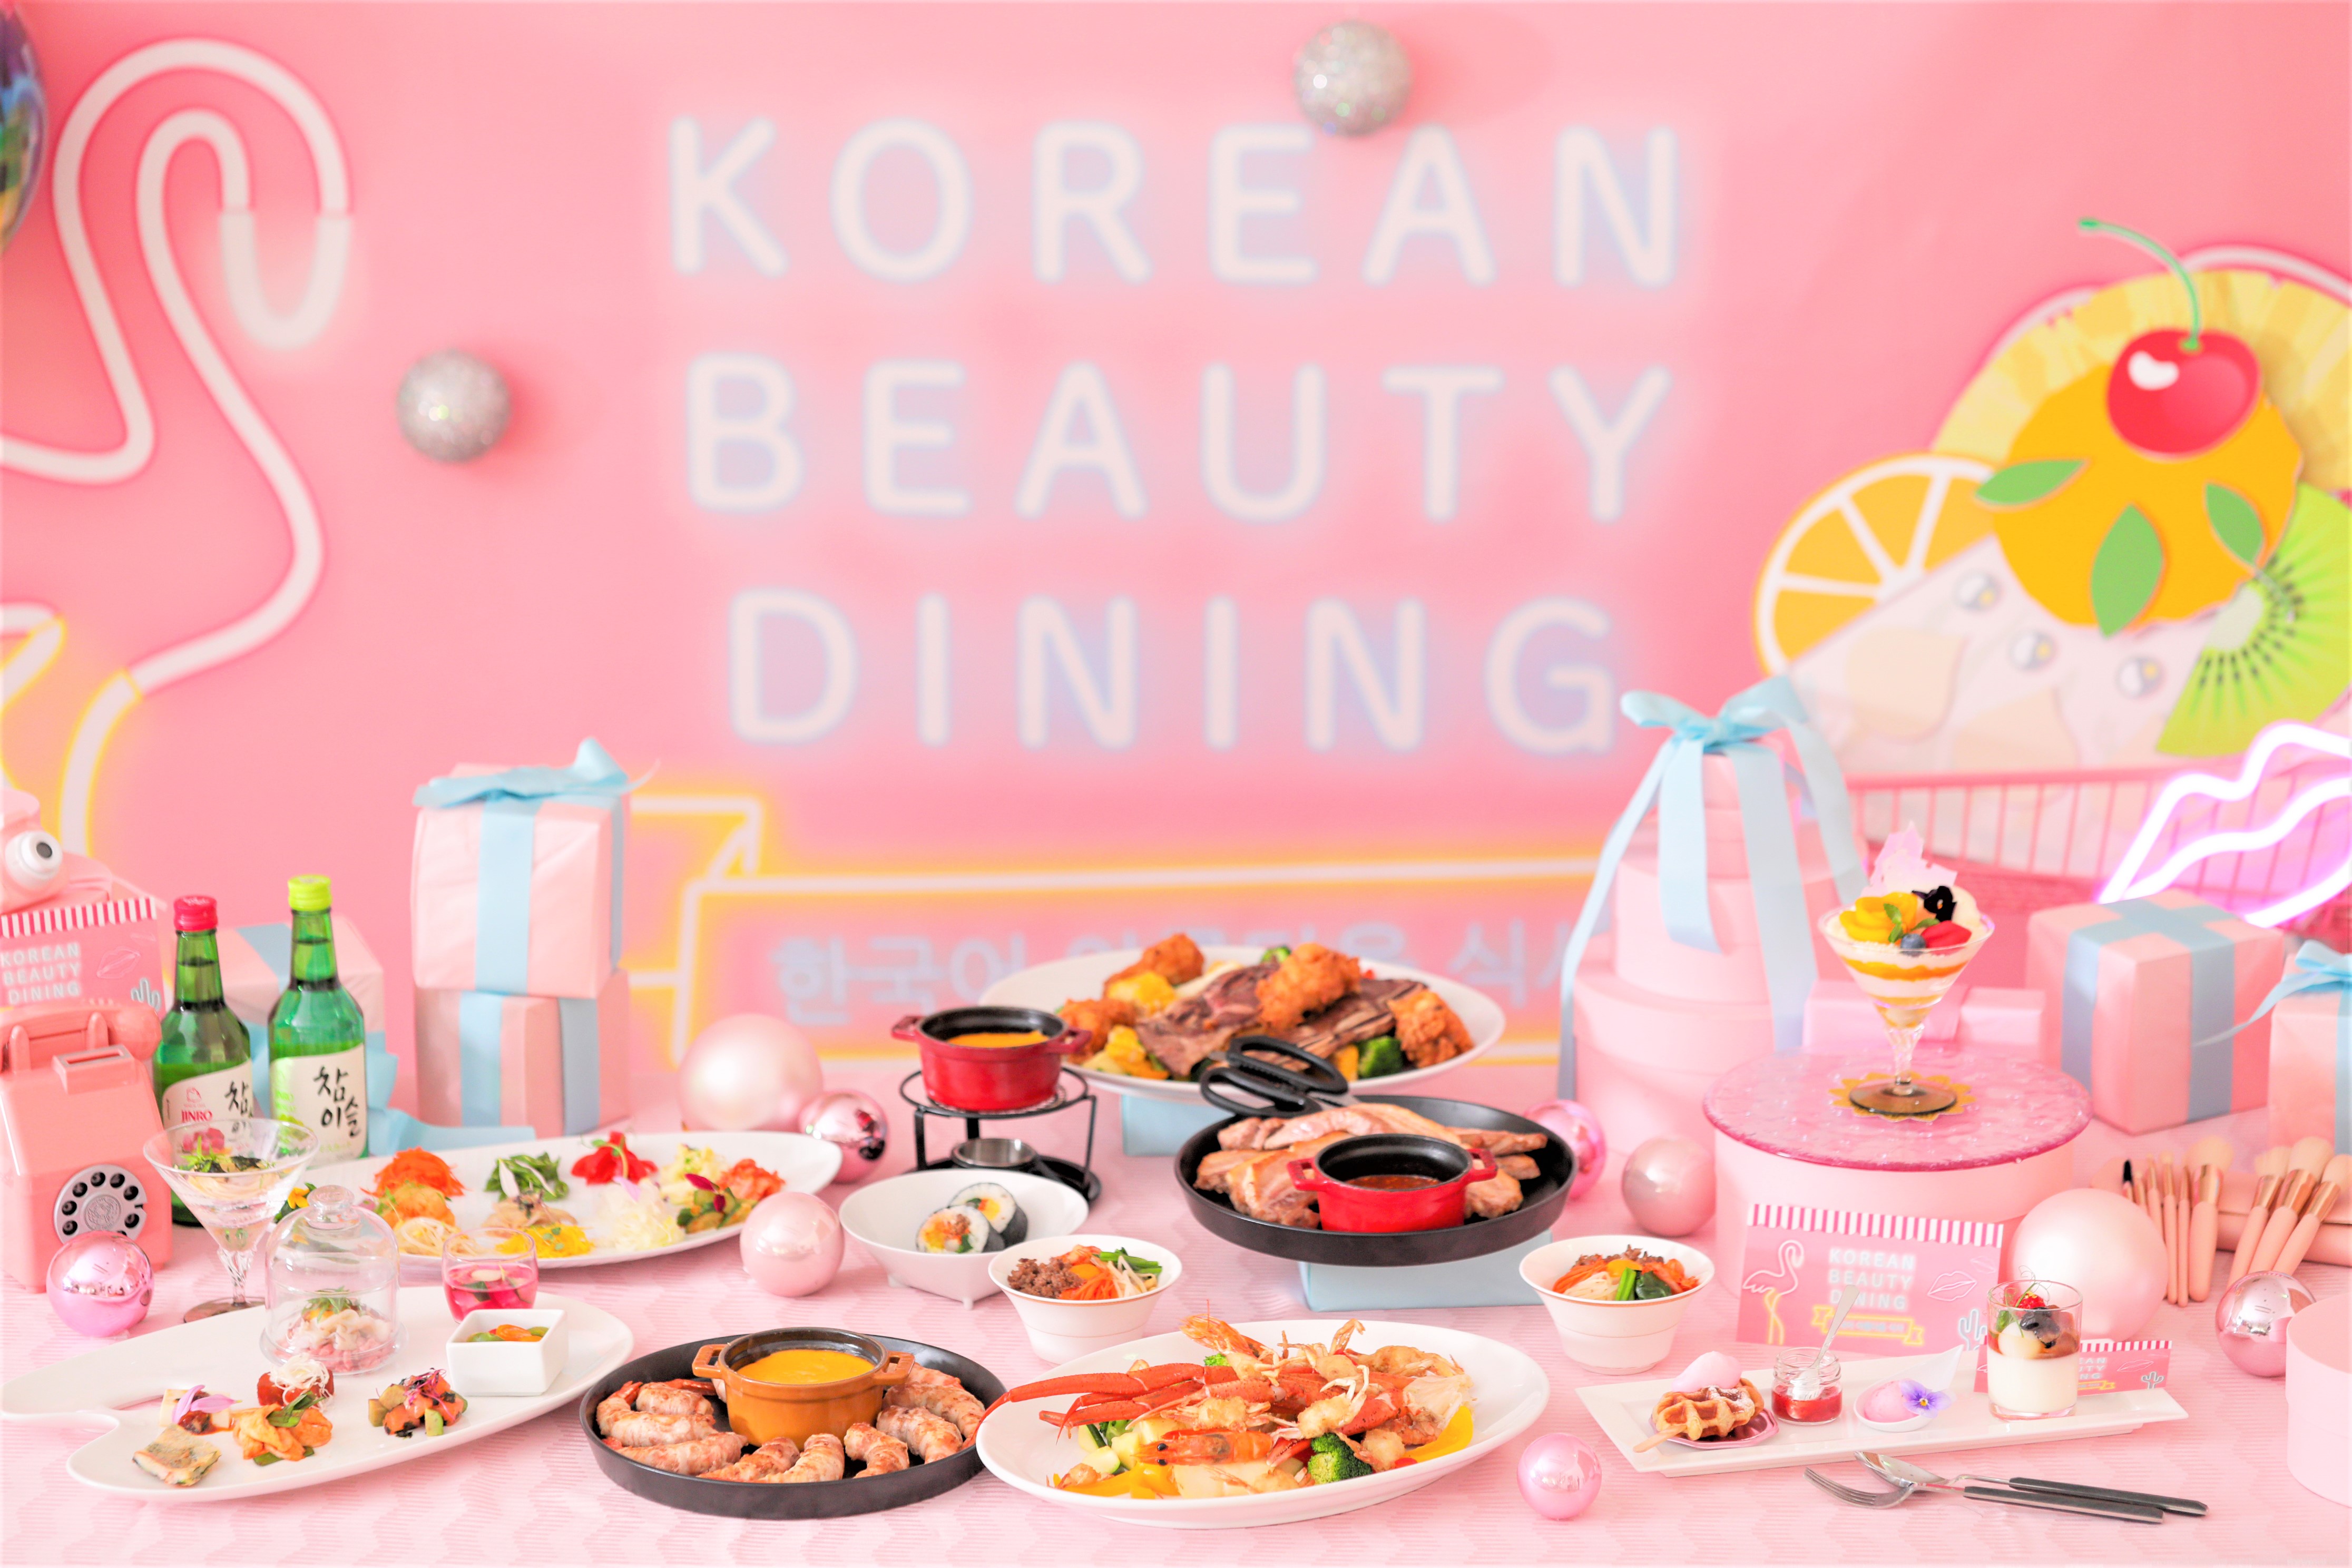 おしゃれでかわいい 韓国の 今 を体感できる料理 スイーツ 空間が楽しめるイベント Korean Beauty Dining 開催 グルメプレス